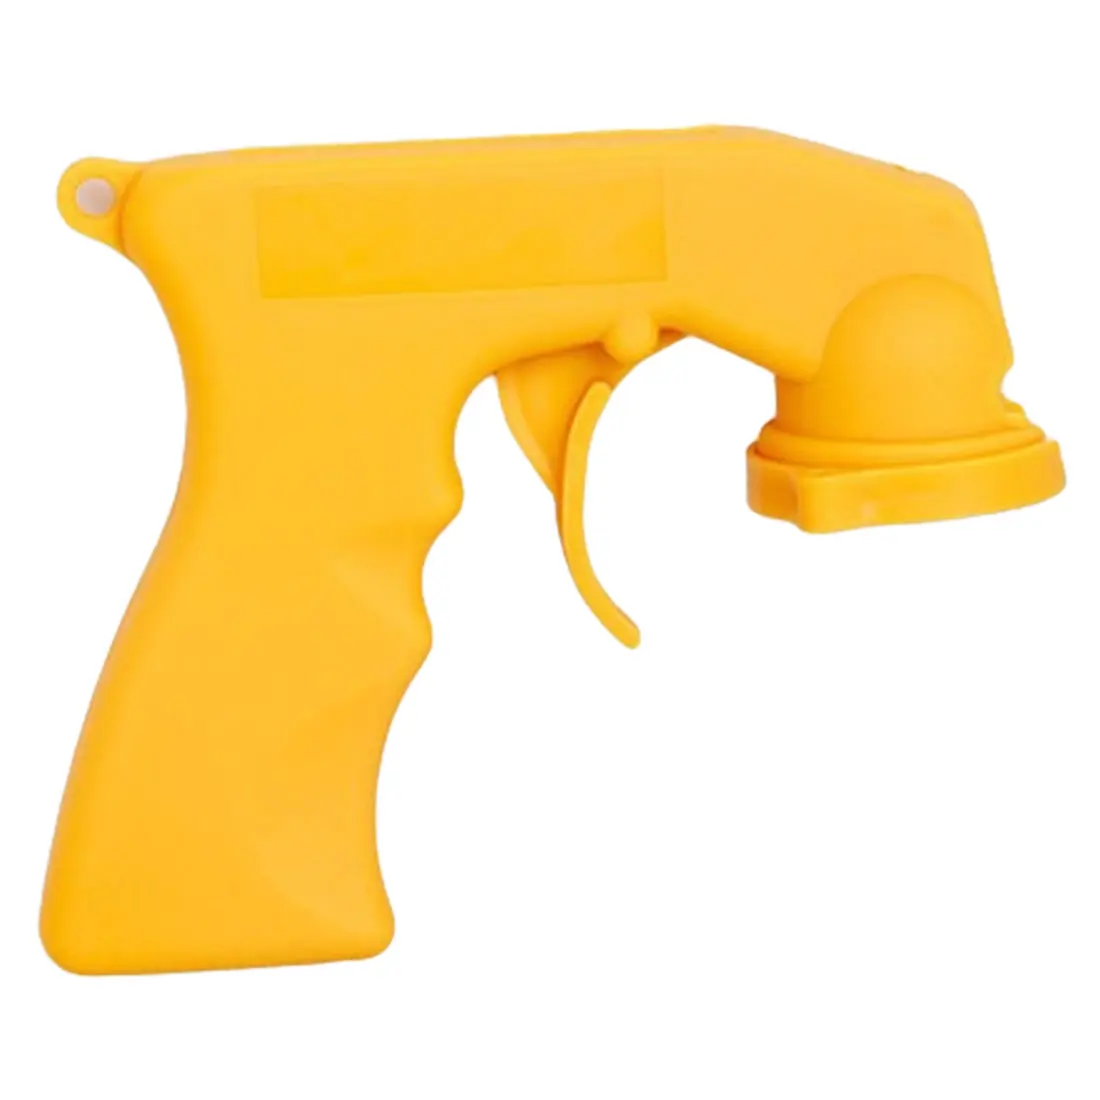 Спрей адаптер для ухода за краской аэрозольный пистолет ручка с полным захватом Блокировка курка воротник уход за автомобилем краска ing paint Tool - Цвет: Цвет: желтый